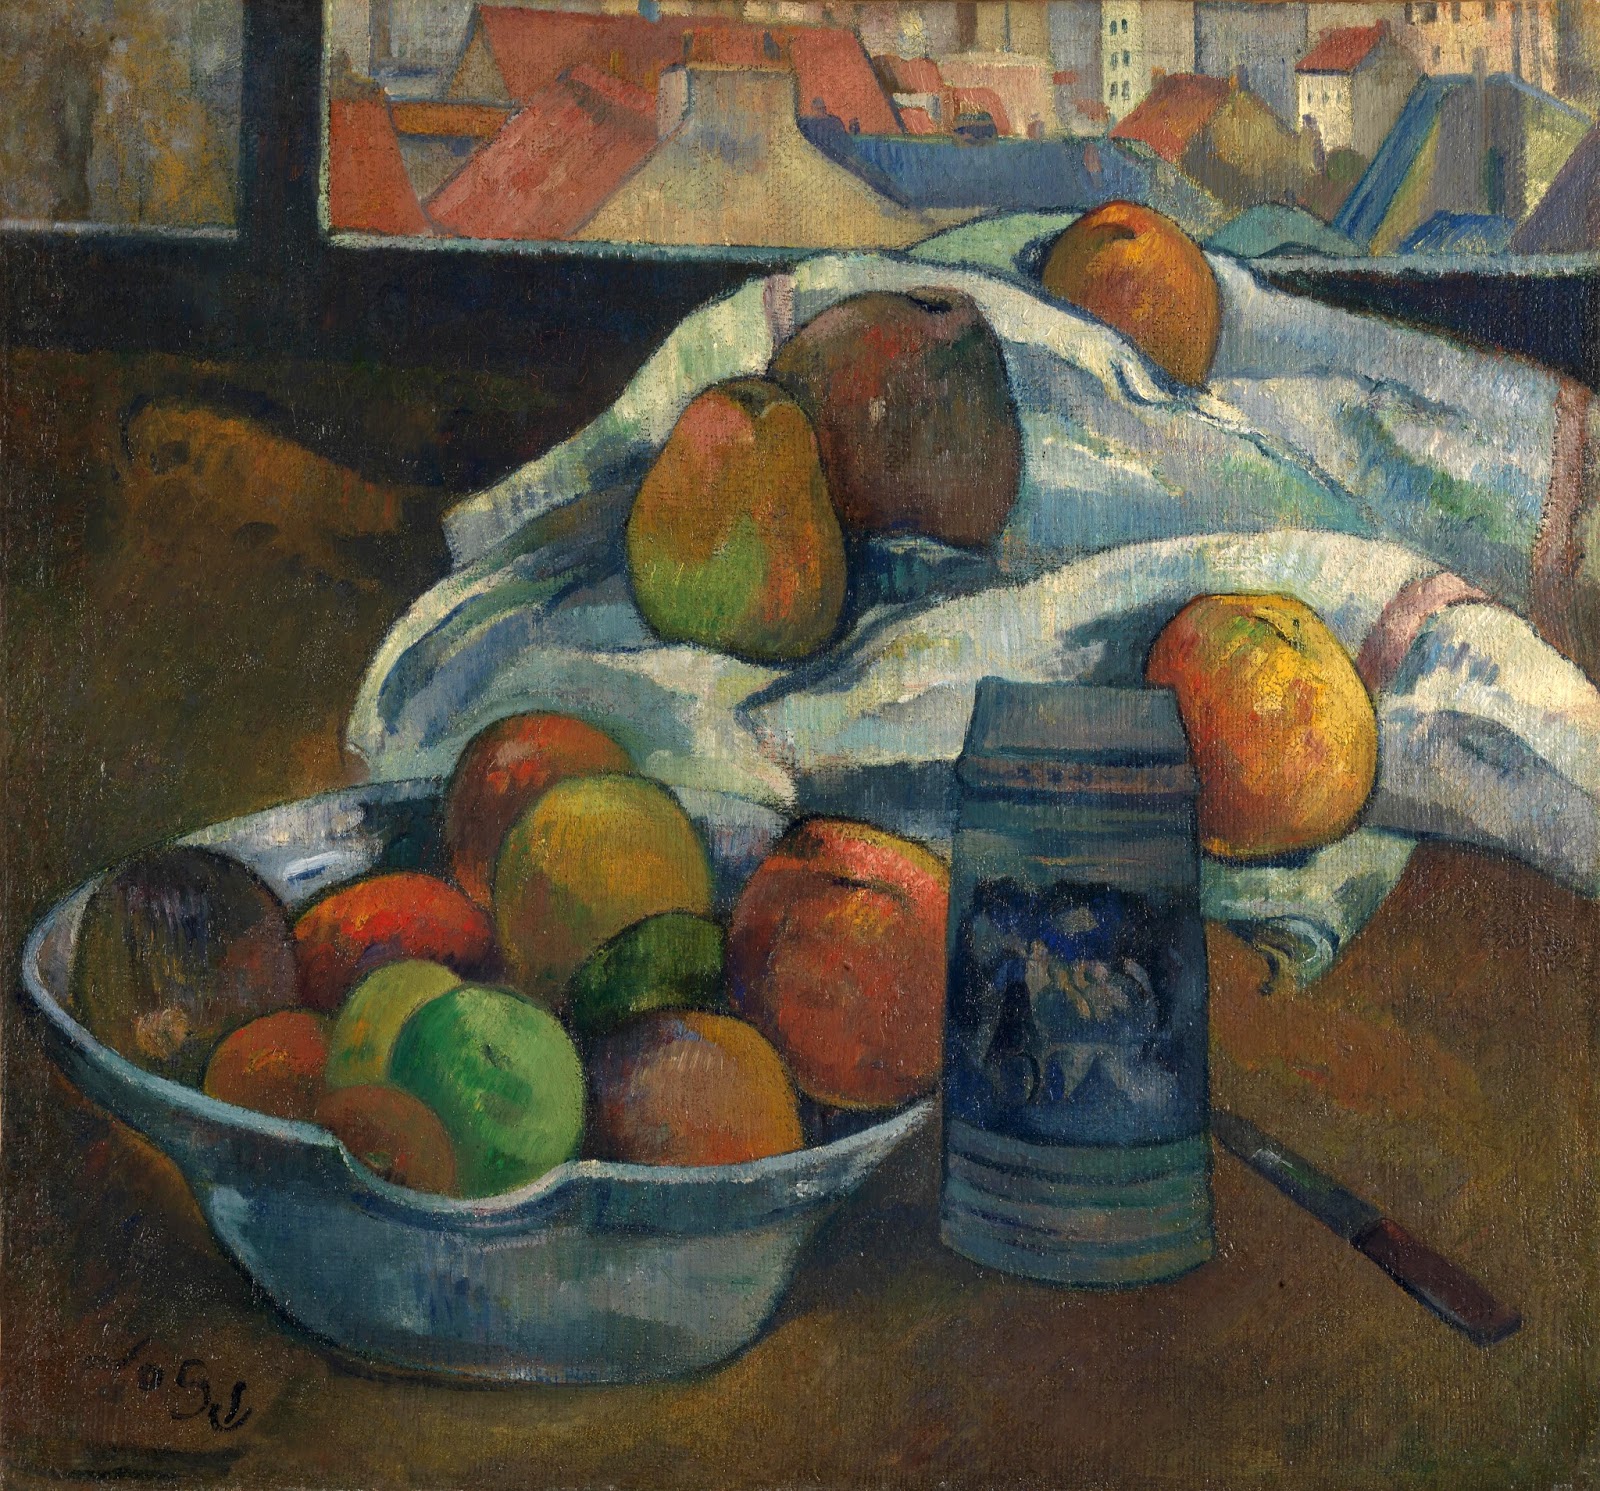 Paul+Gauguin-1848-1903 (306).jpg